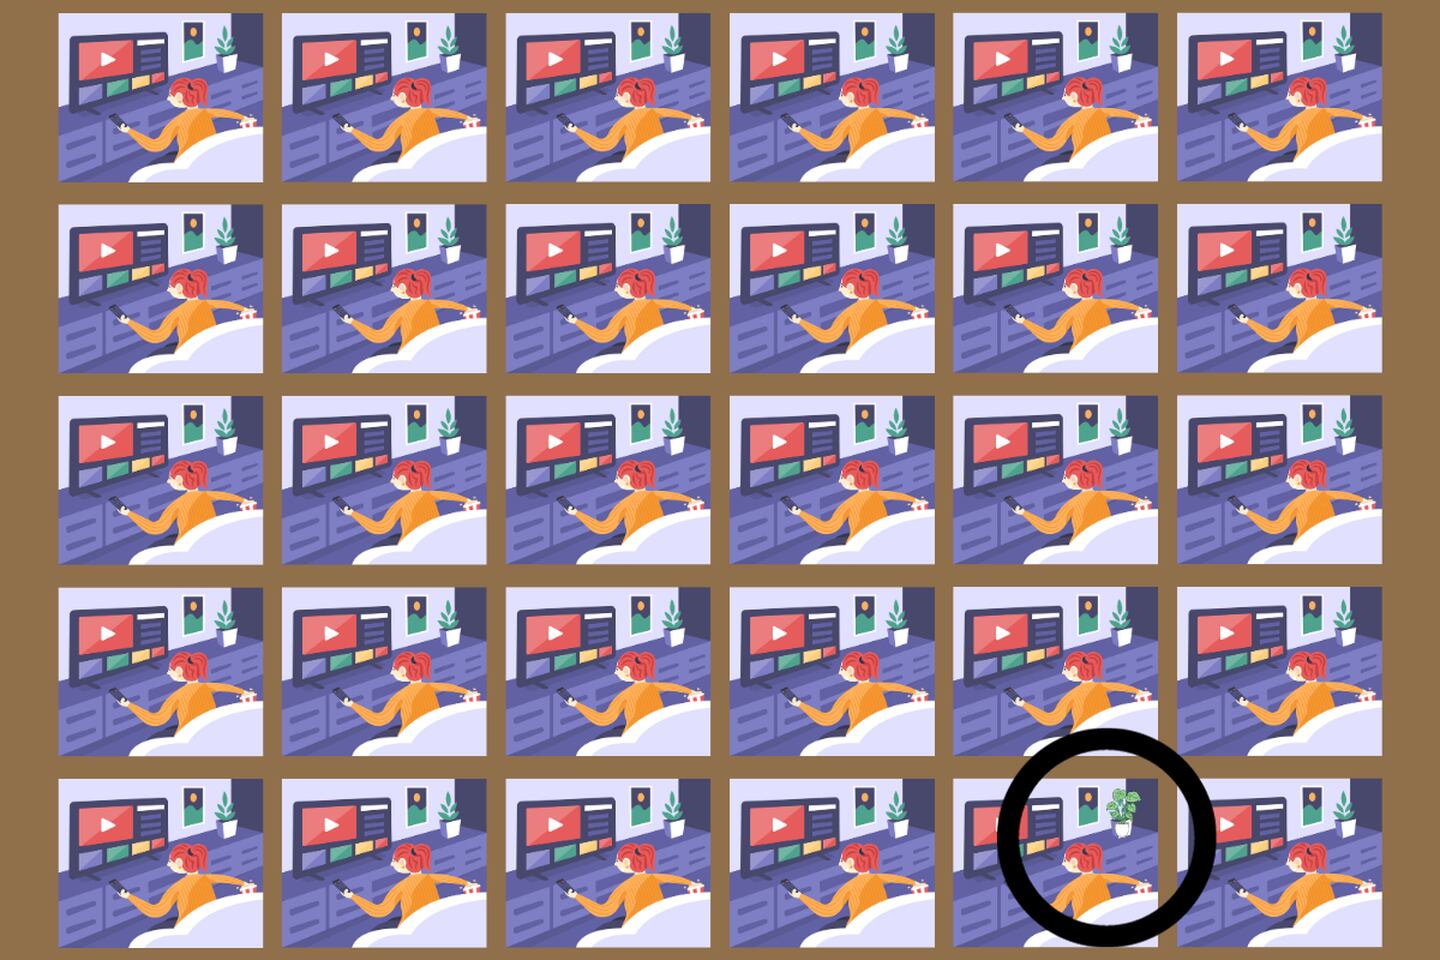 En este test visual hay varias imágenes que parecen iguales, donde hay una mujer viendo televisión. Una de ellas tiene una pequeña diferencia.